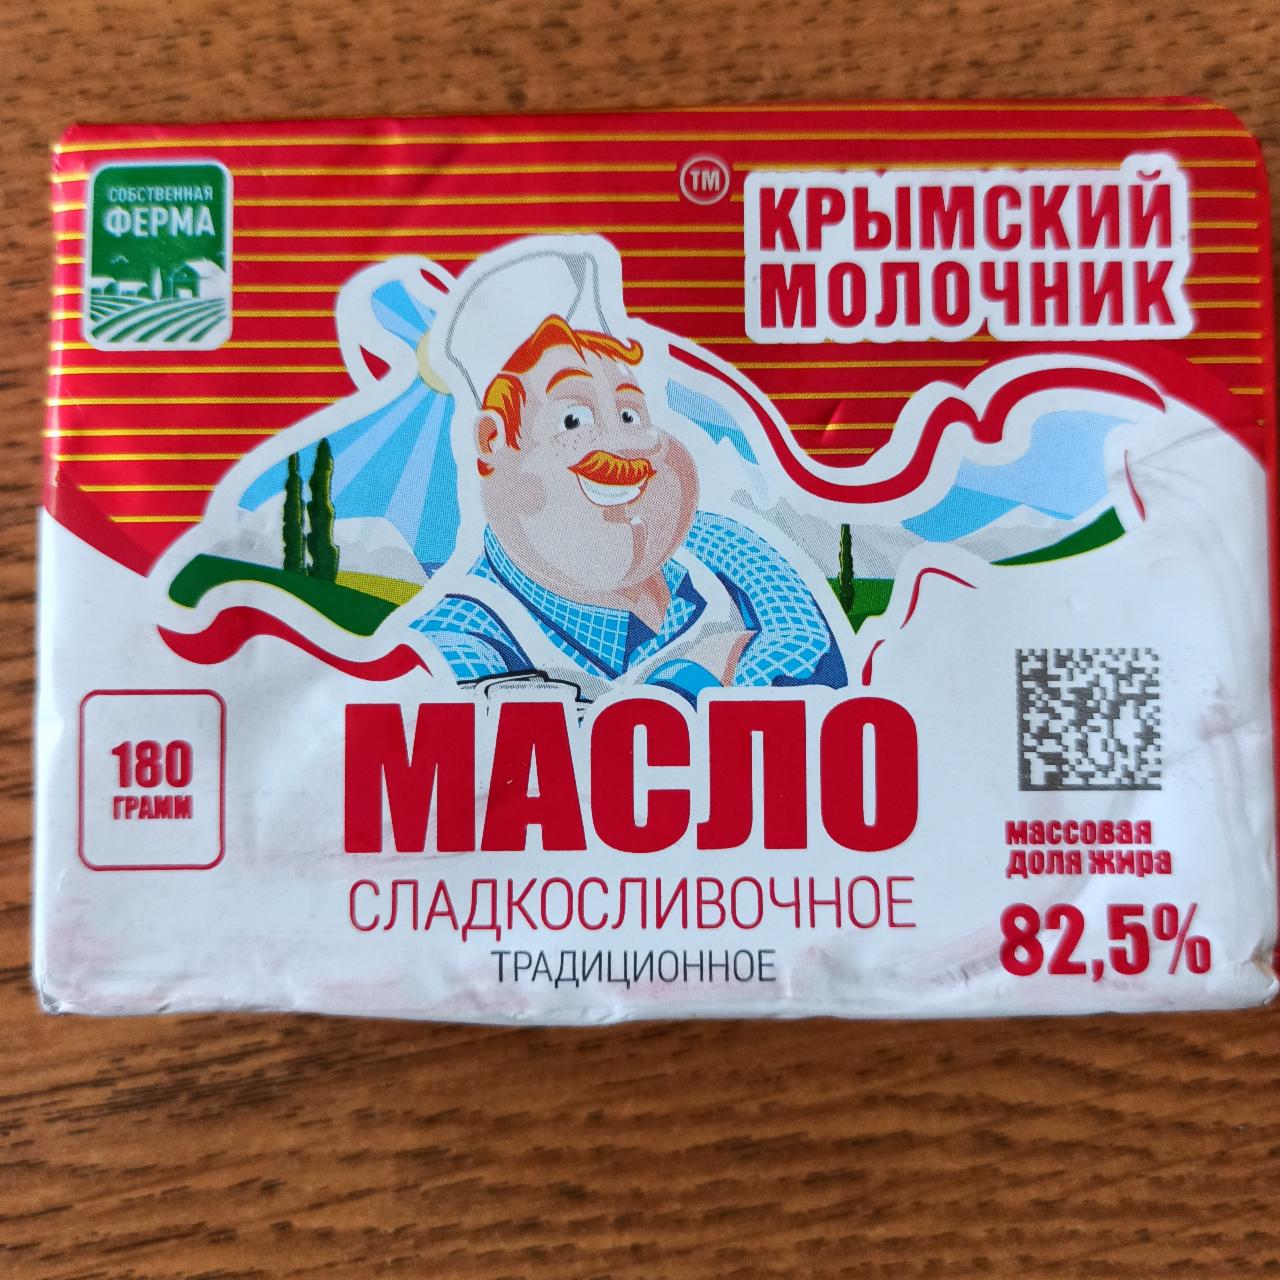 Фото - Масло сладкосливочное 82.5% Крымский молочник